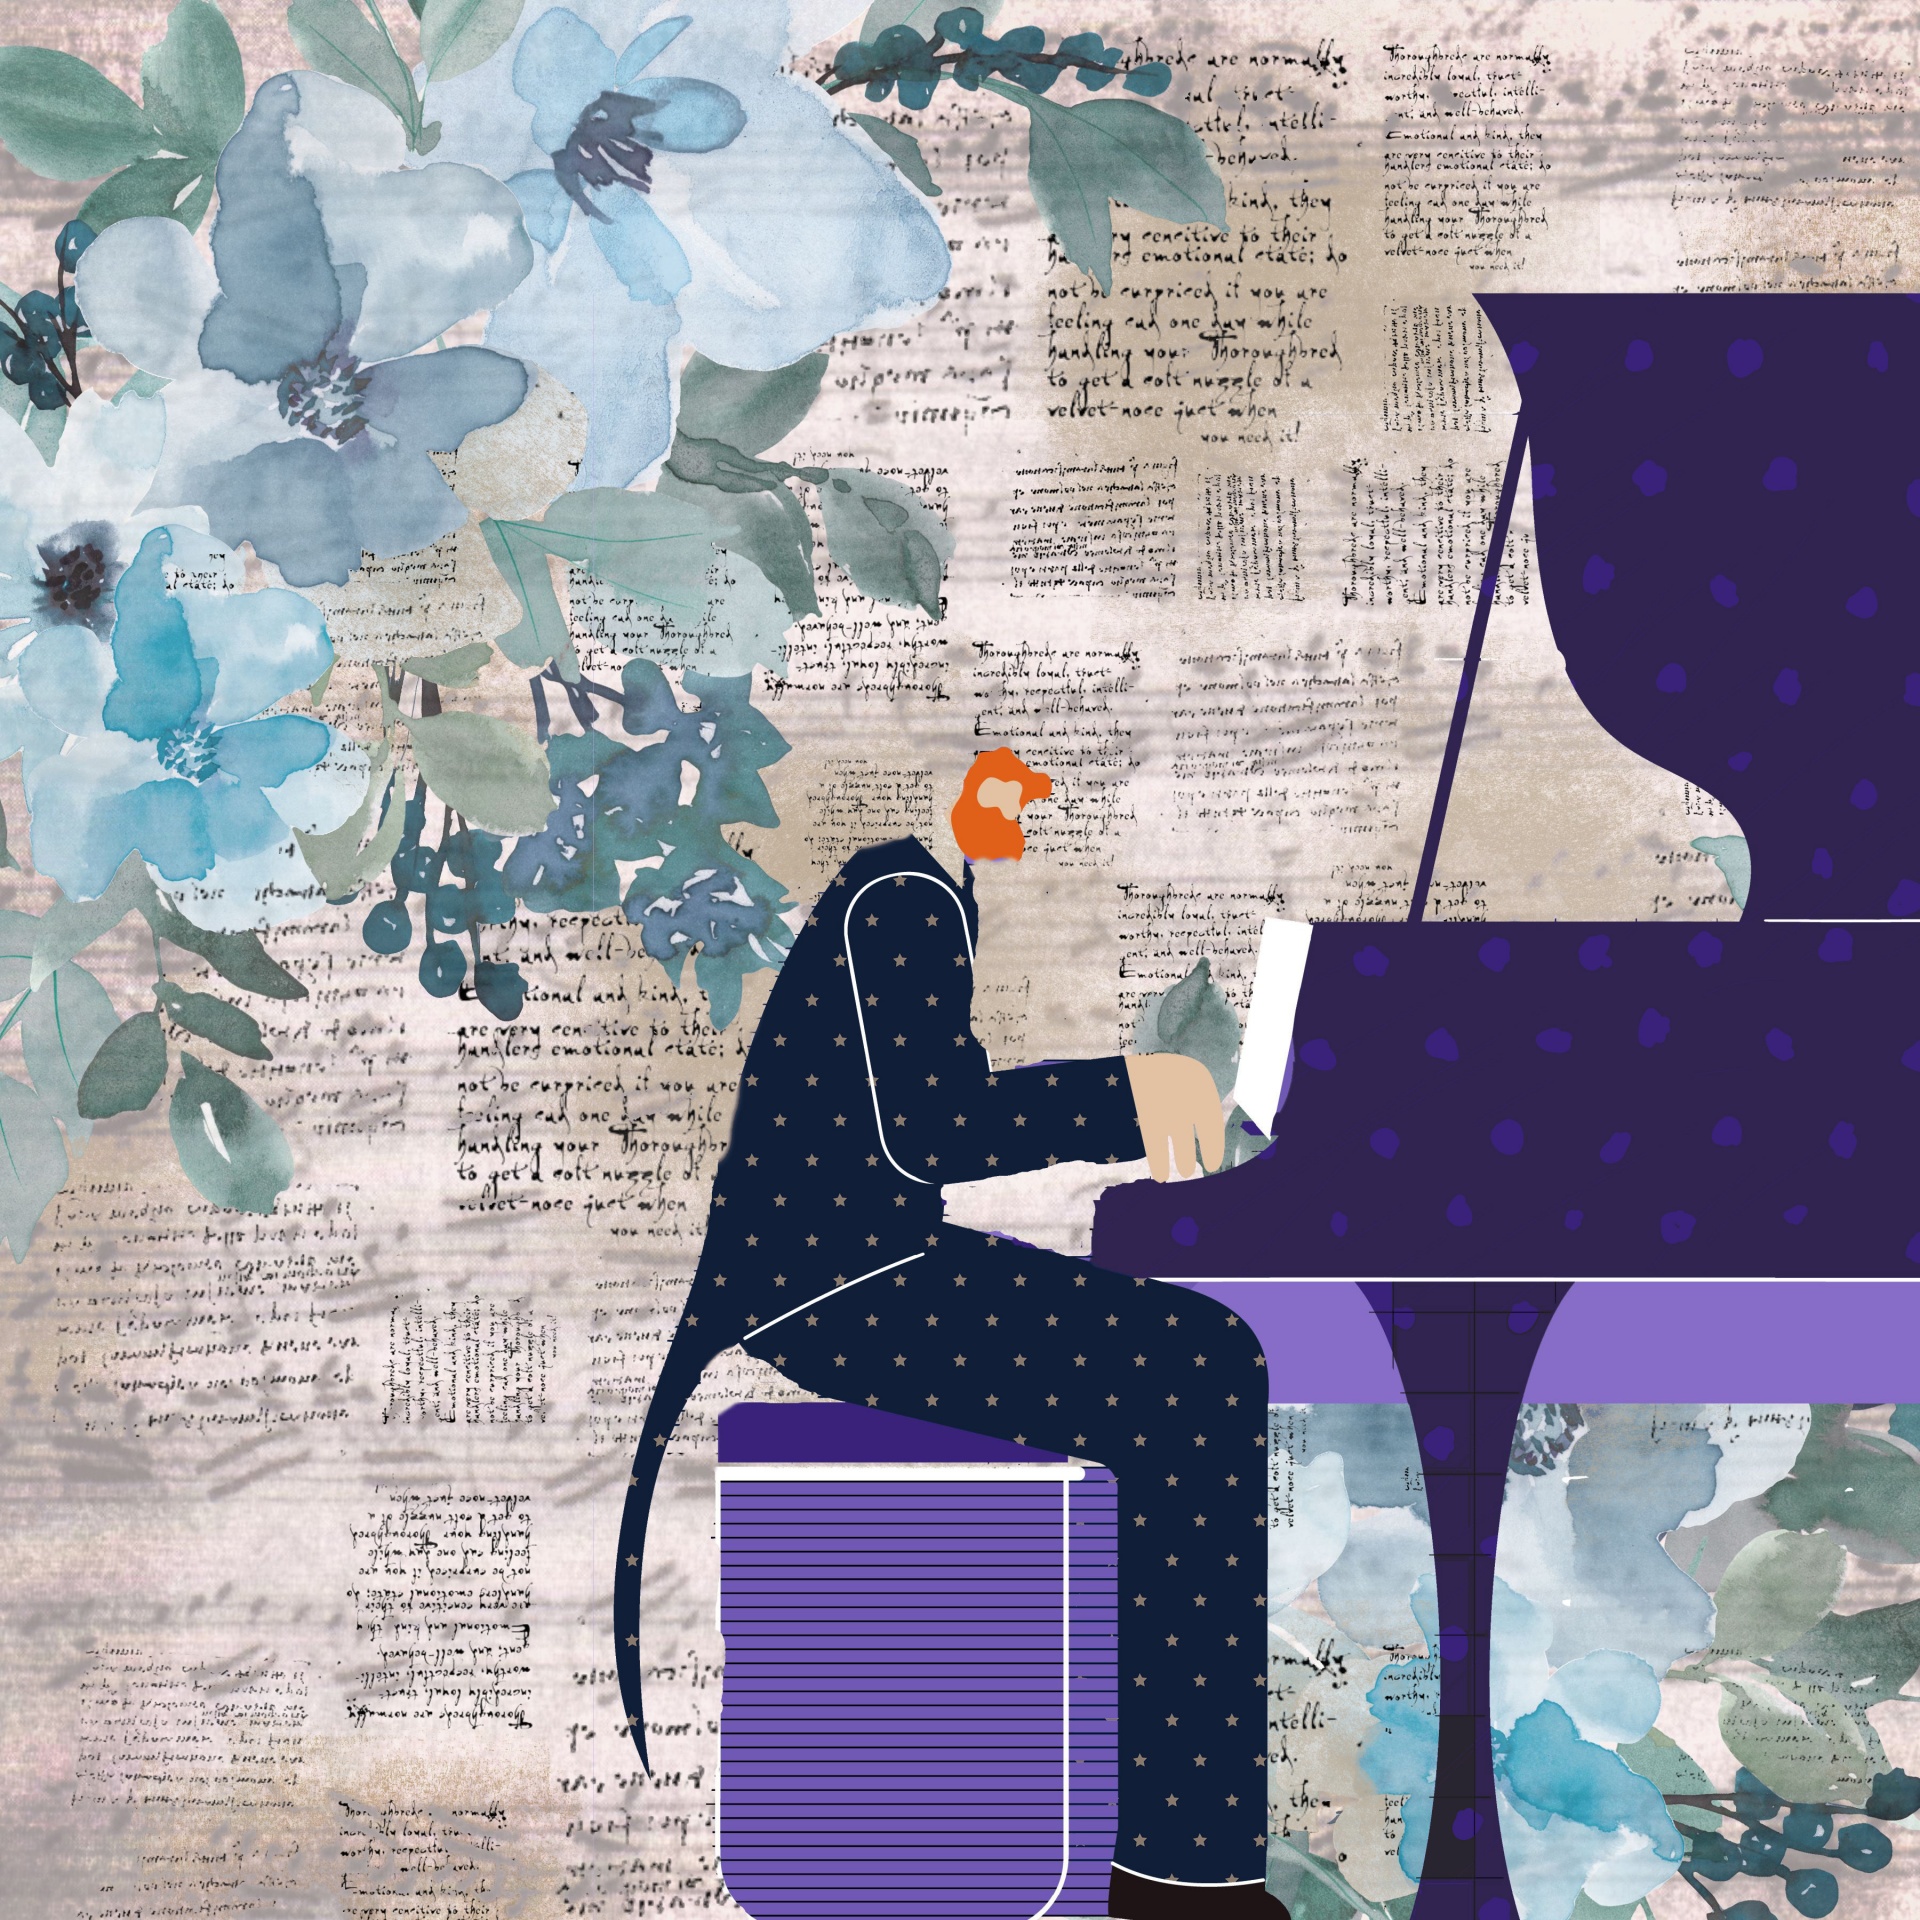 Grand Piano Musician Collage Poster